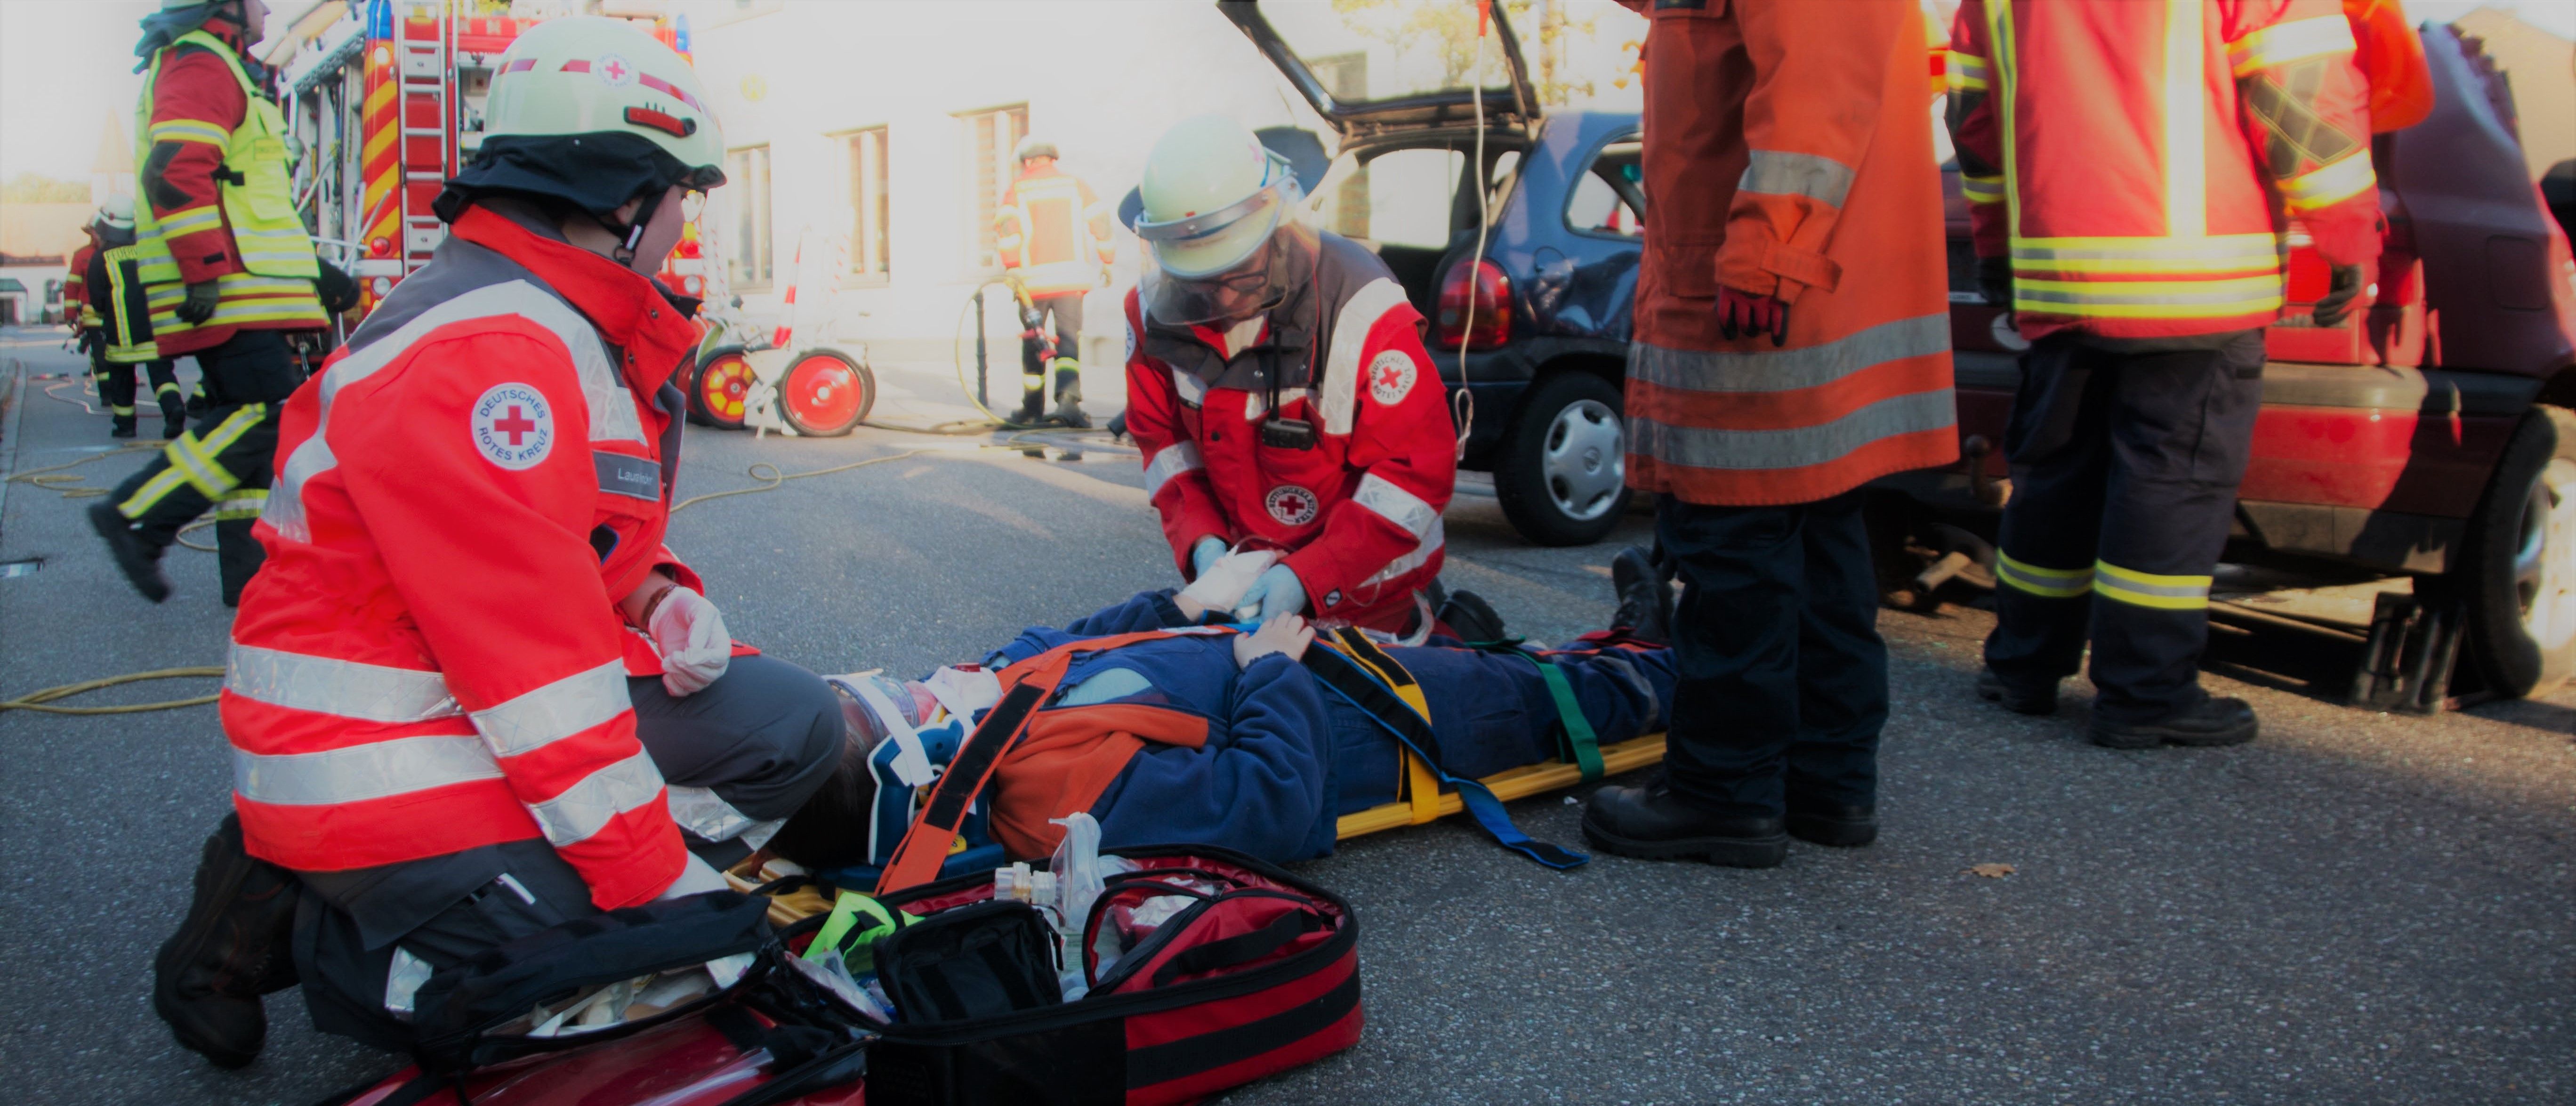 Foto: Zwei Helfer bei einer Übung am Spineboard beim Versorgen eines Verletzten